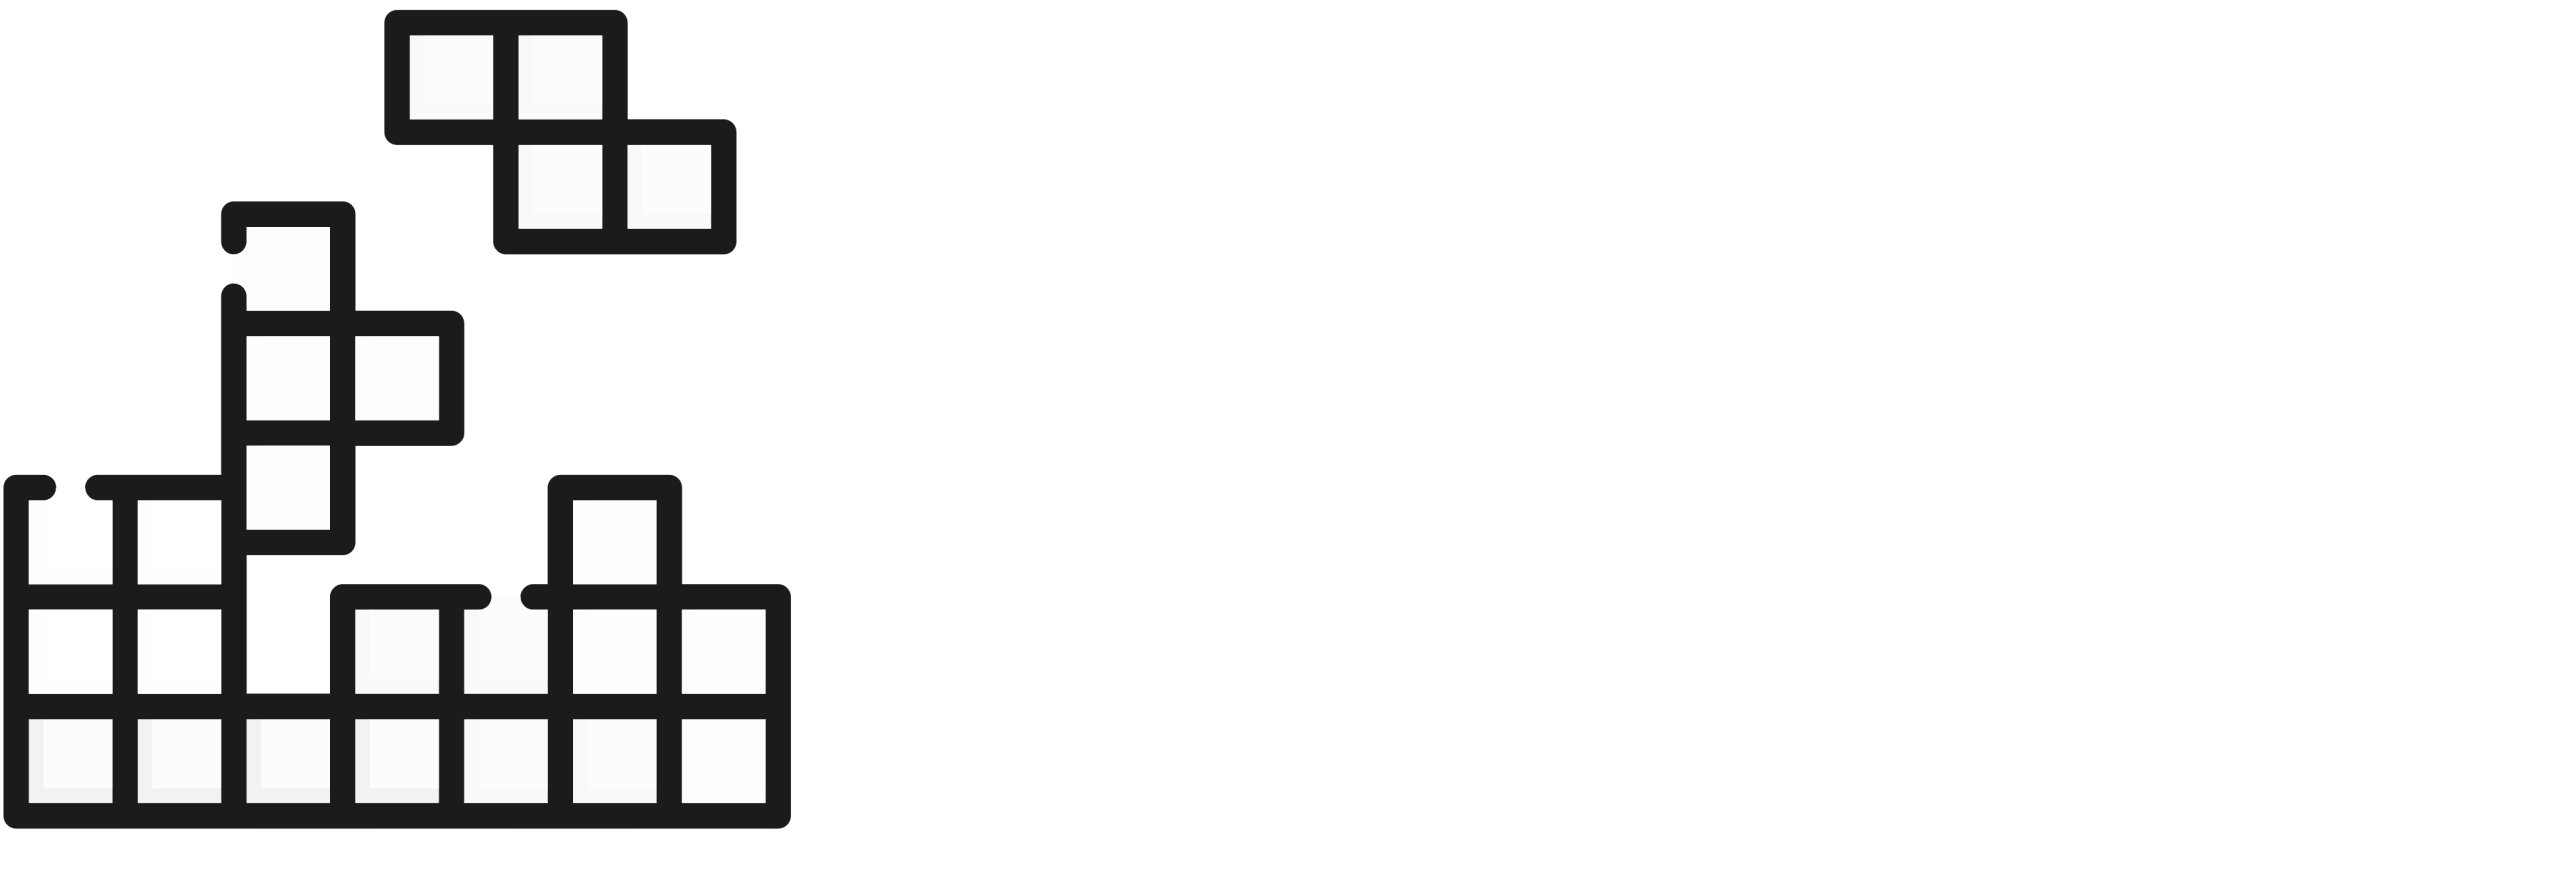 haw-hamburg-lan-party-logo